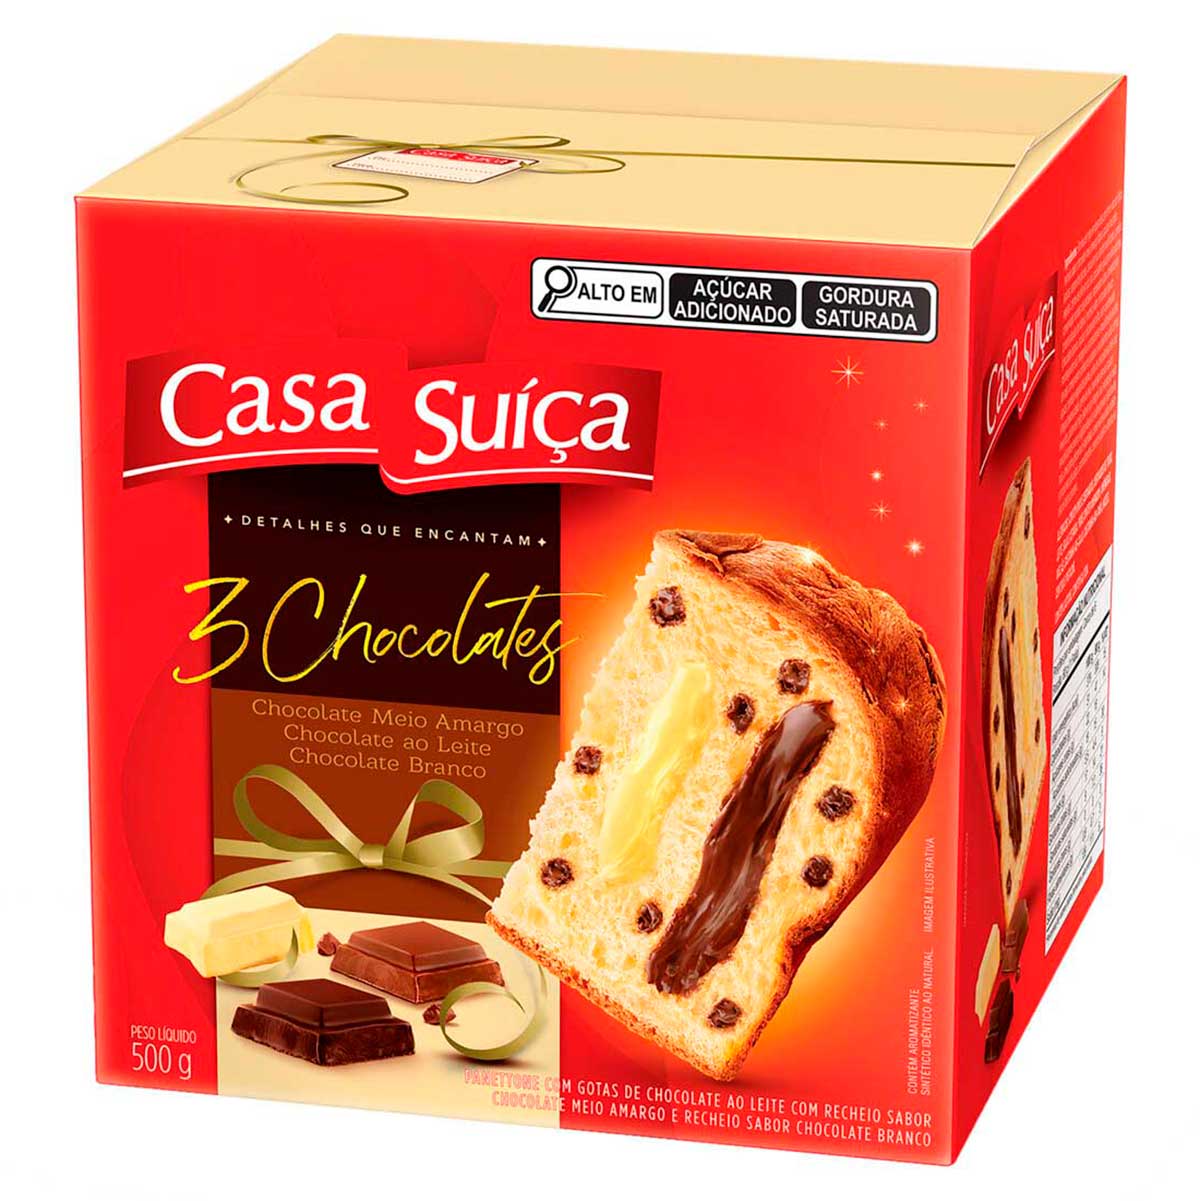 panettone-com-gotas-de-chocolate-ao-leite-recheio-3-chocolates-casa-suica-caixa-500-g-1.jpg